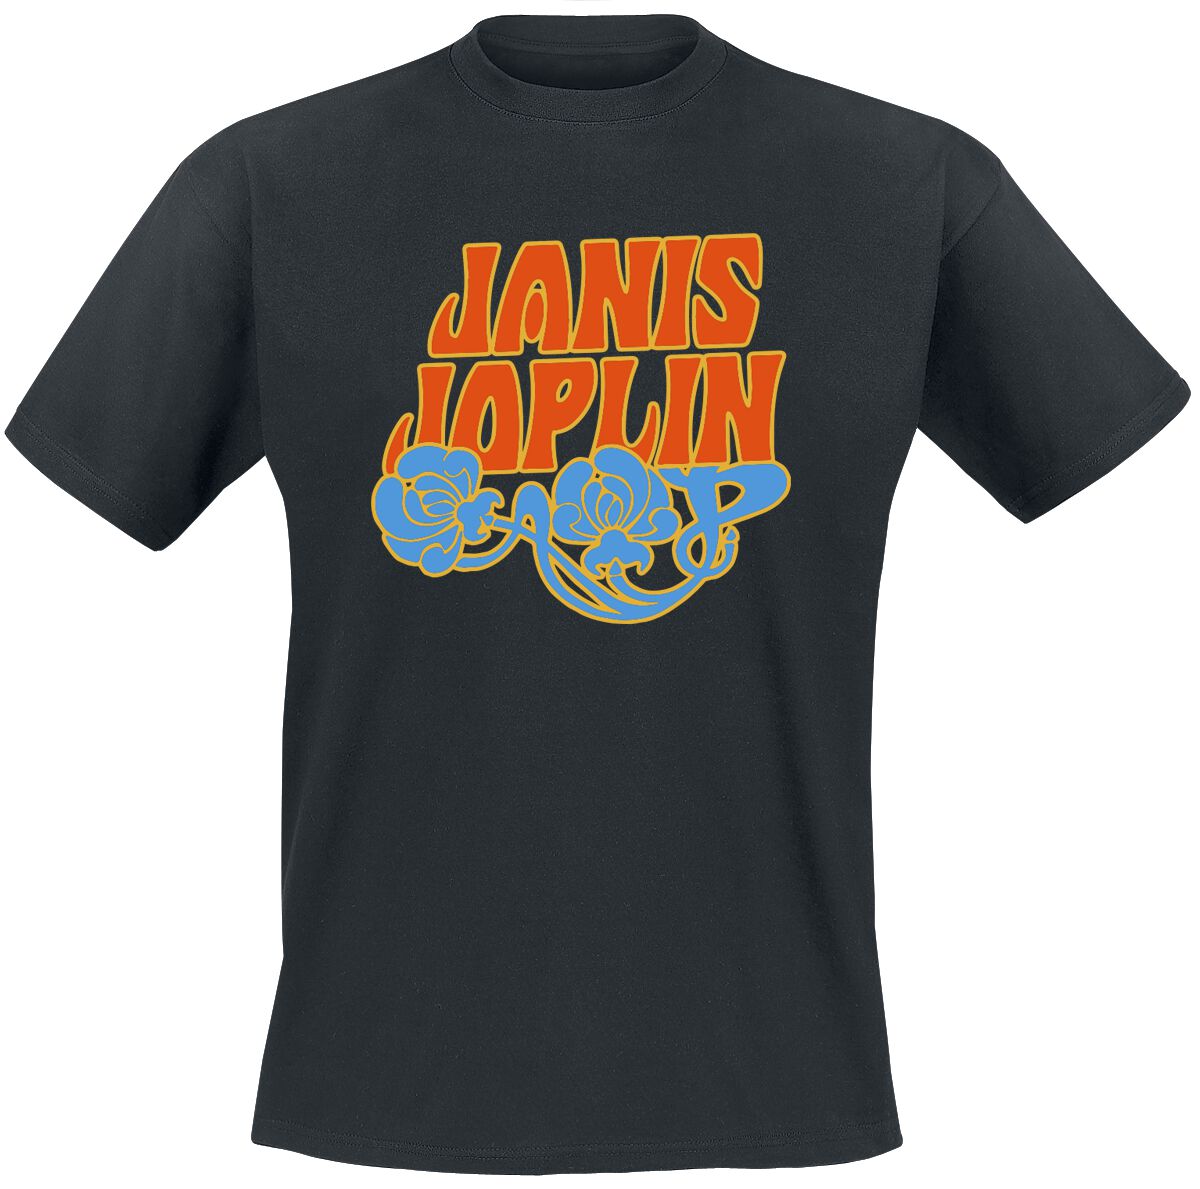 Joplin, Janis T-Shirt - Floral Logo - S bis XXL - für Männer - Größe XL - schwarz  - EMP exklusives Merchandise!